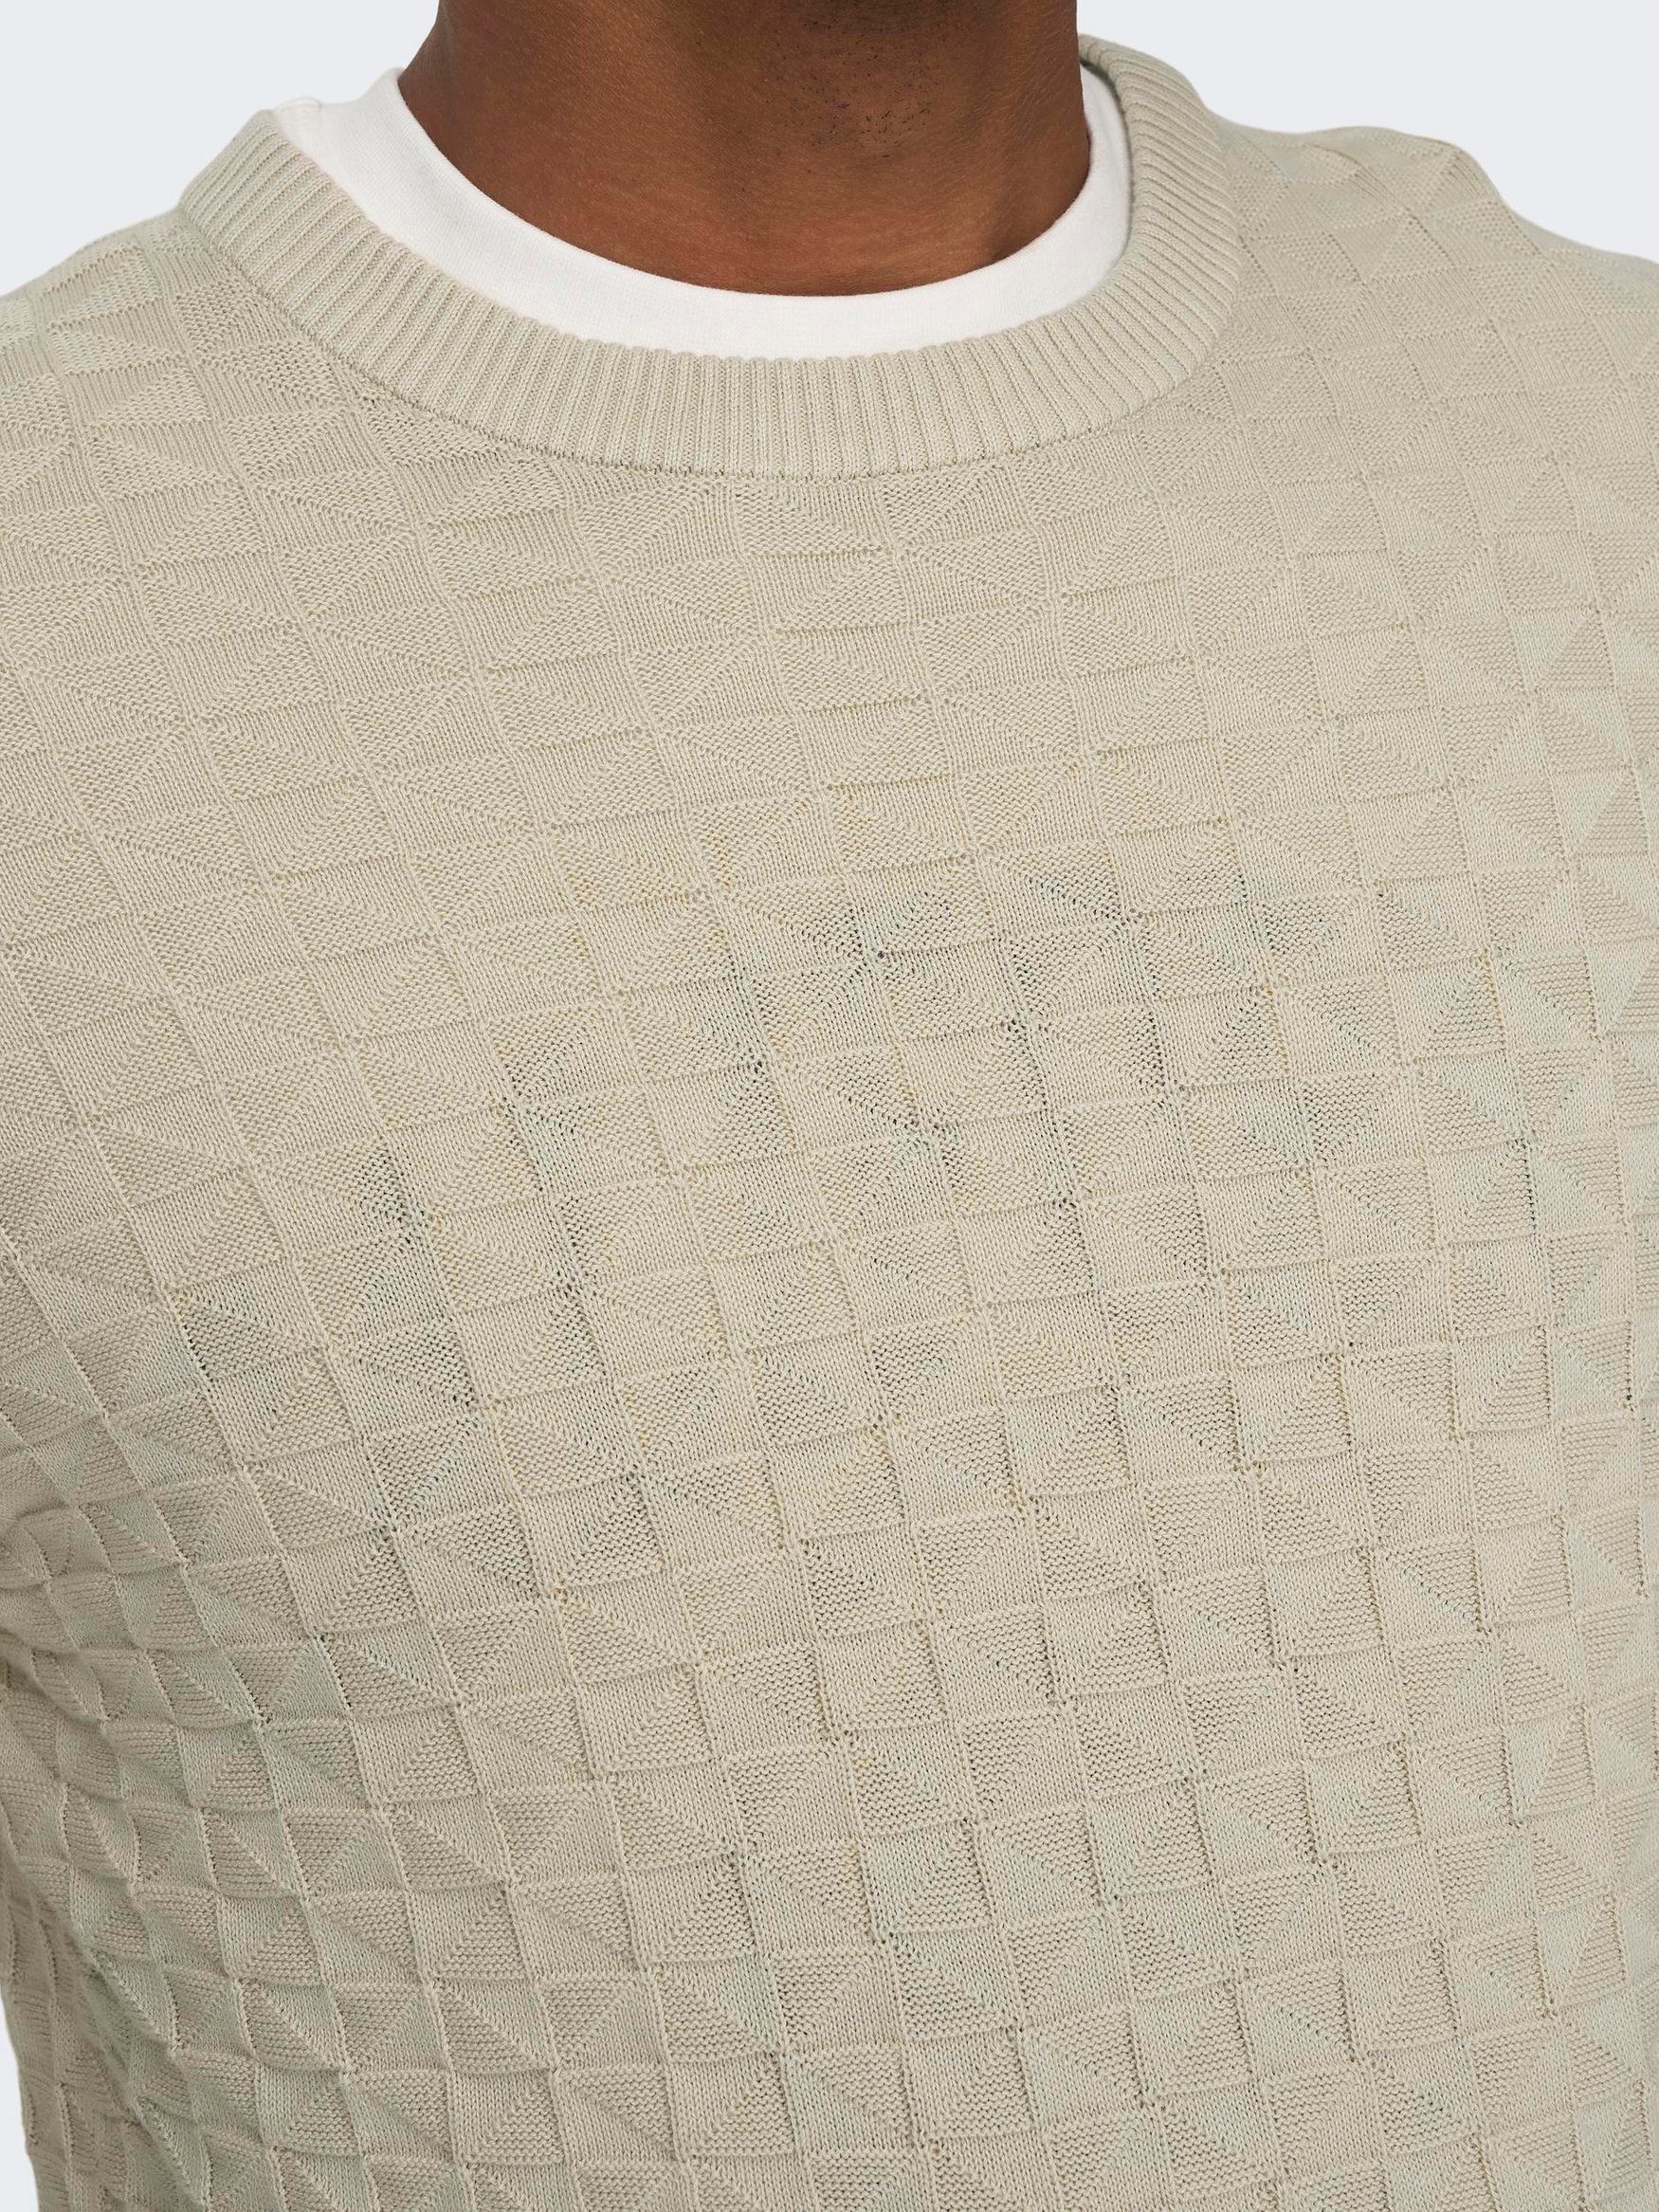 Muster Beige-2 SONS ONSKALLE Geripptes Karo Design Pullover Strickpullover Strick ONLY in & 6742